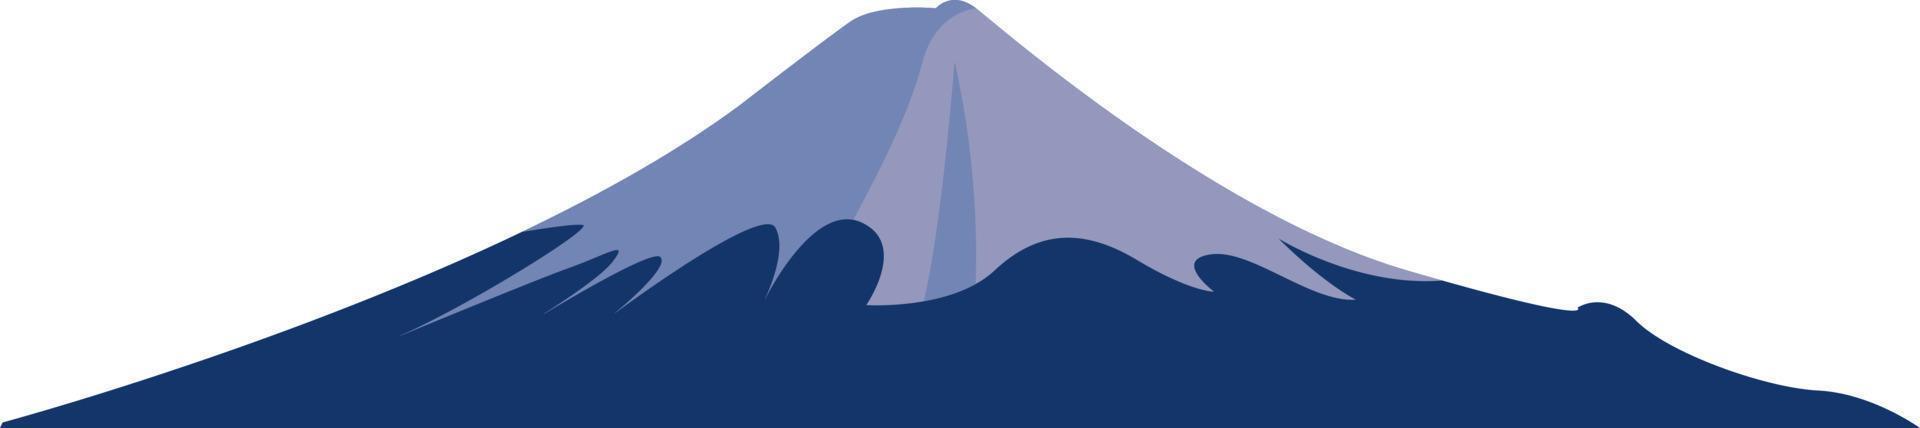 Mount Fuji, Illustration, Vektor auf weißem Hintergrund.